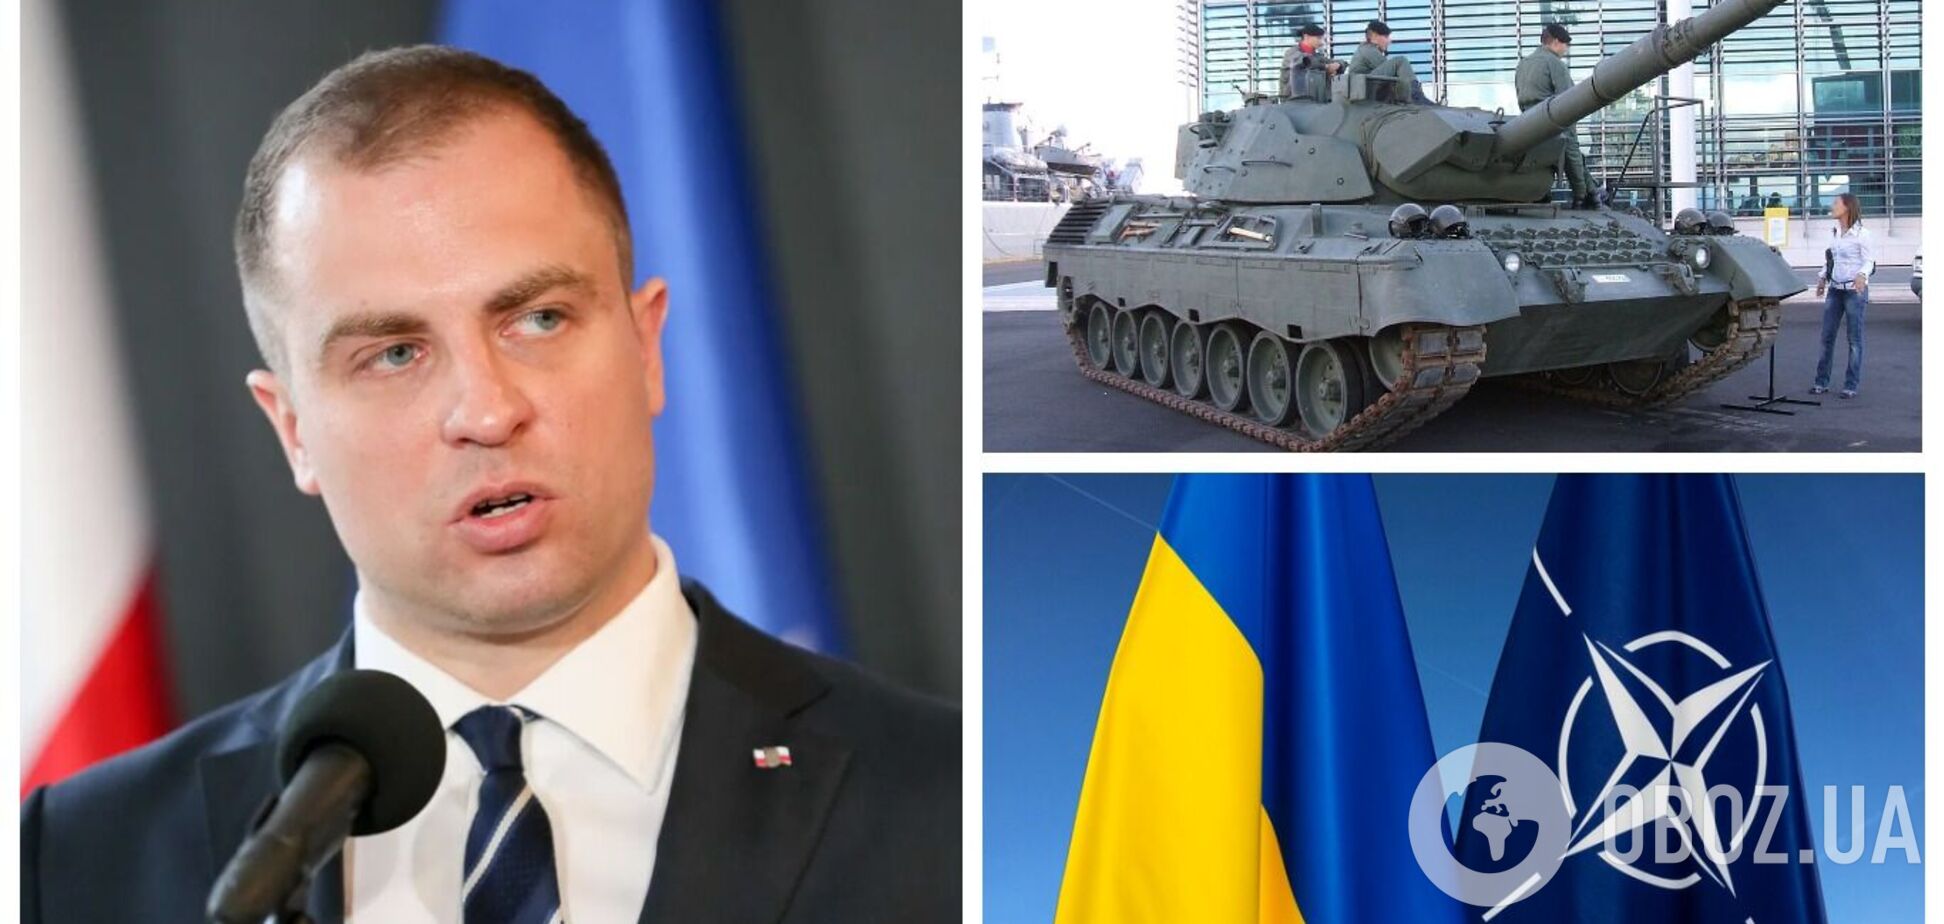 'Це неправда': посол Польщі в НАТО заявив, що в Альянсі немає домовленостей, які забороняли б поставки ЗСУ танків 